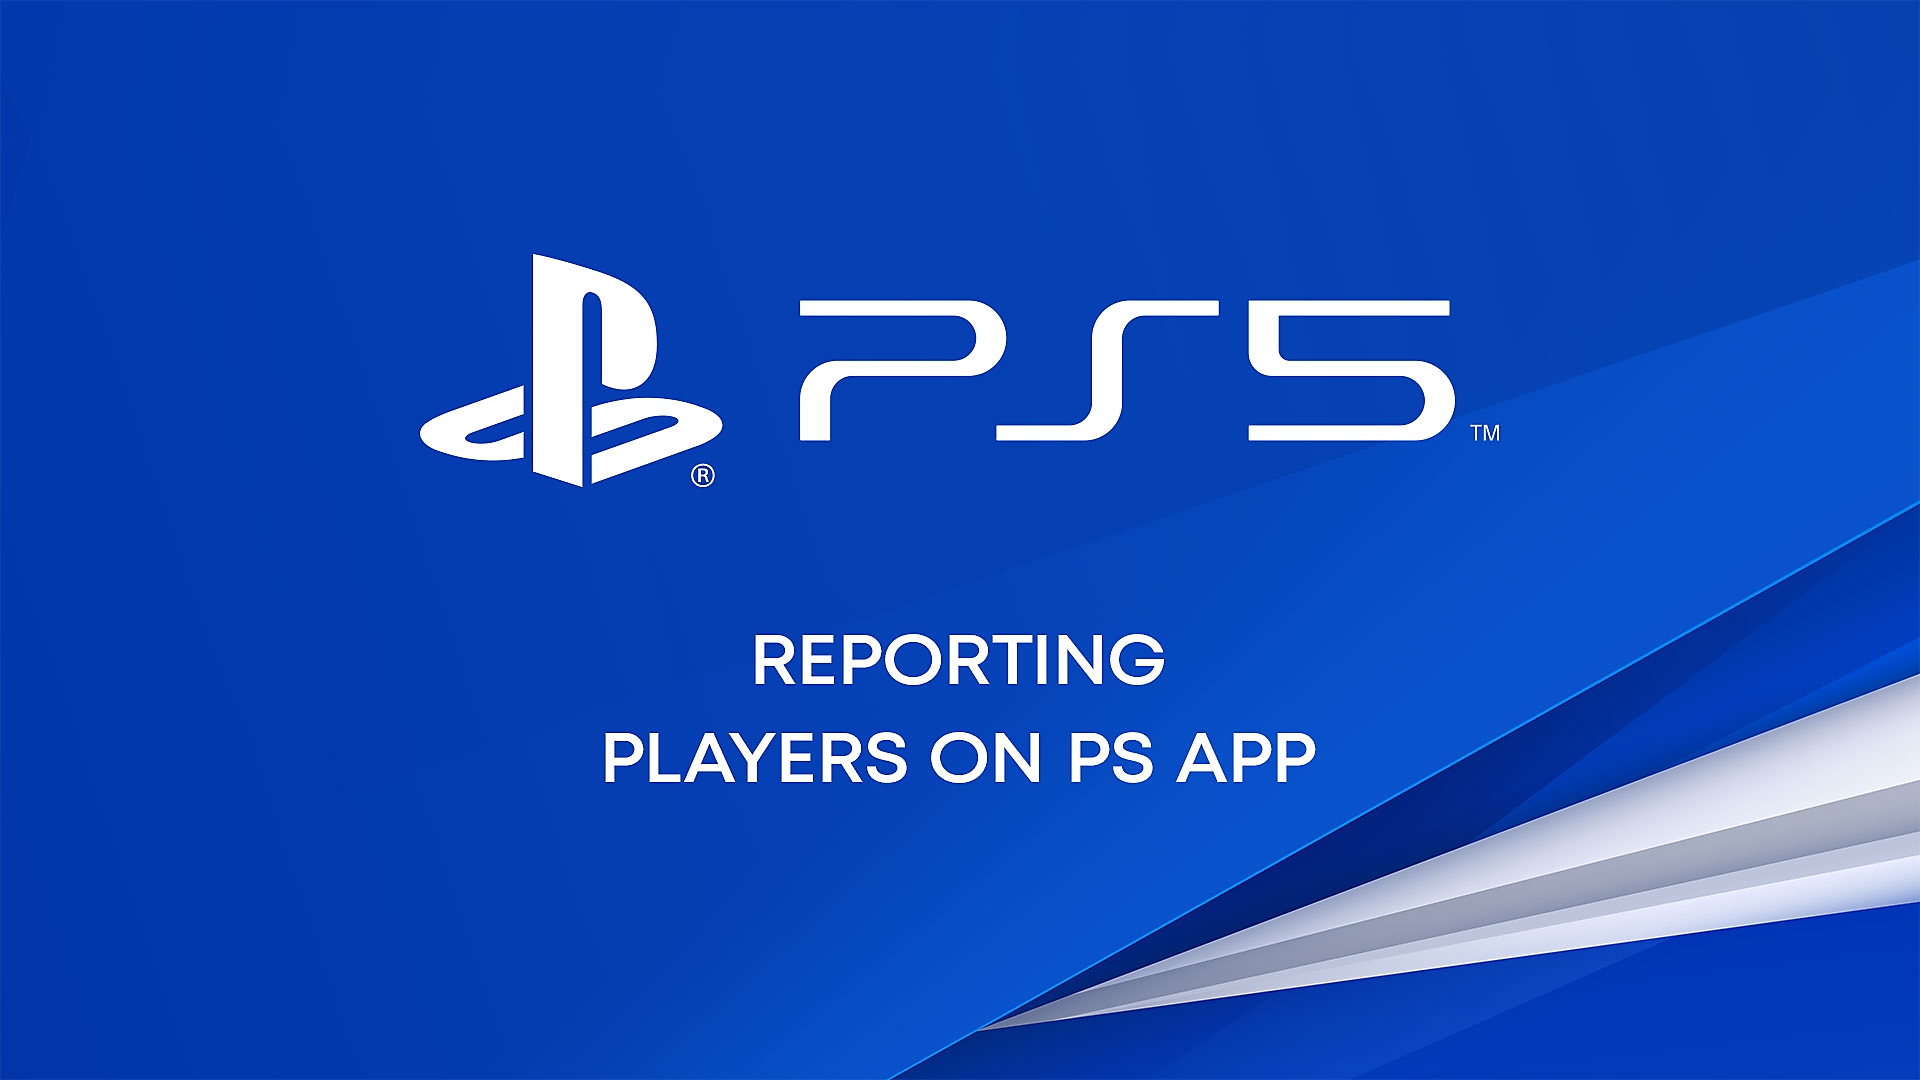 PS Appでプレーヤーを報告する方法についてのYouTube動画。